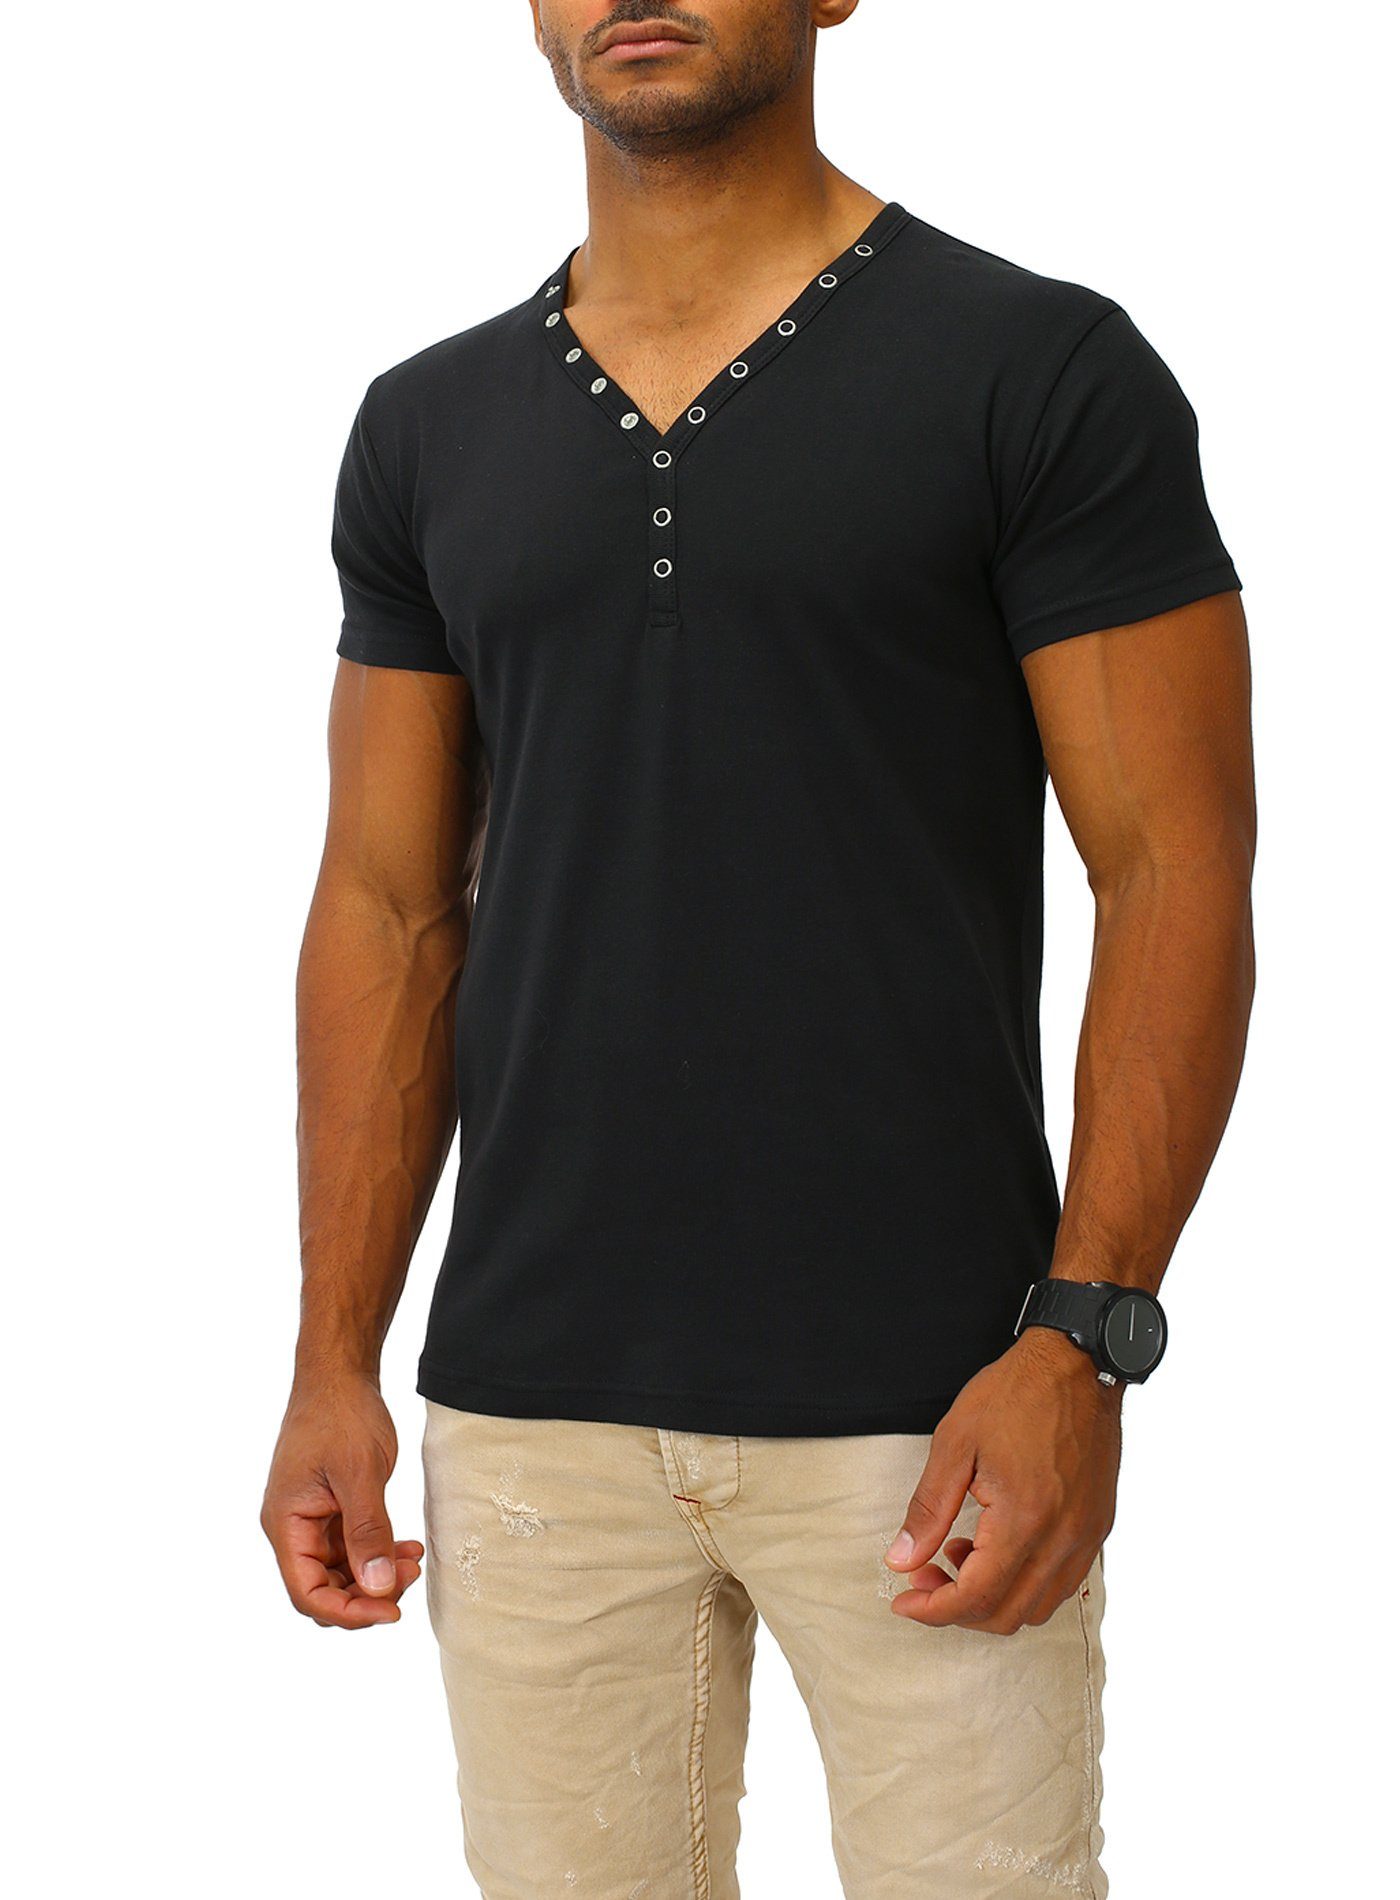 Joe Franks T-Shirt SMALL BUTTON in stylischem Slim Fit, Kurzarm Druckknopf black